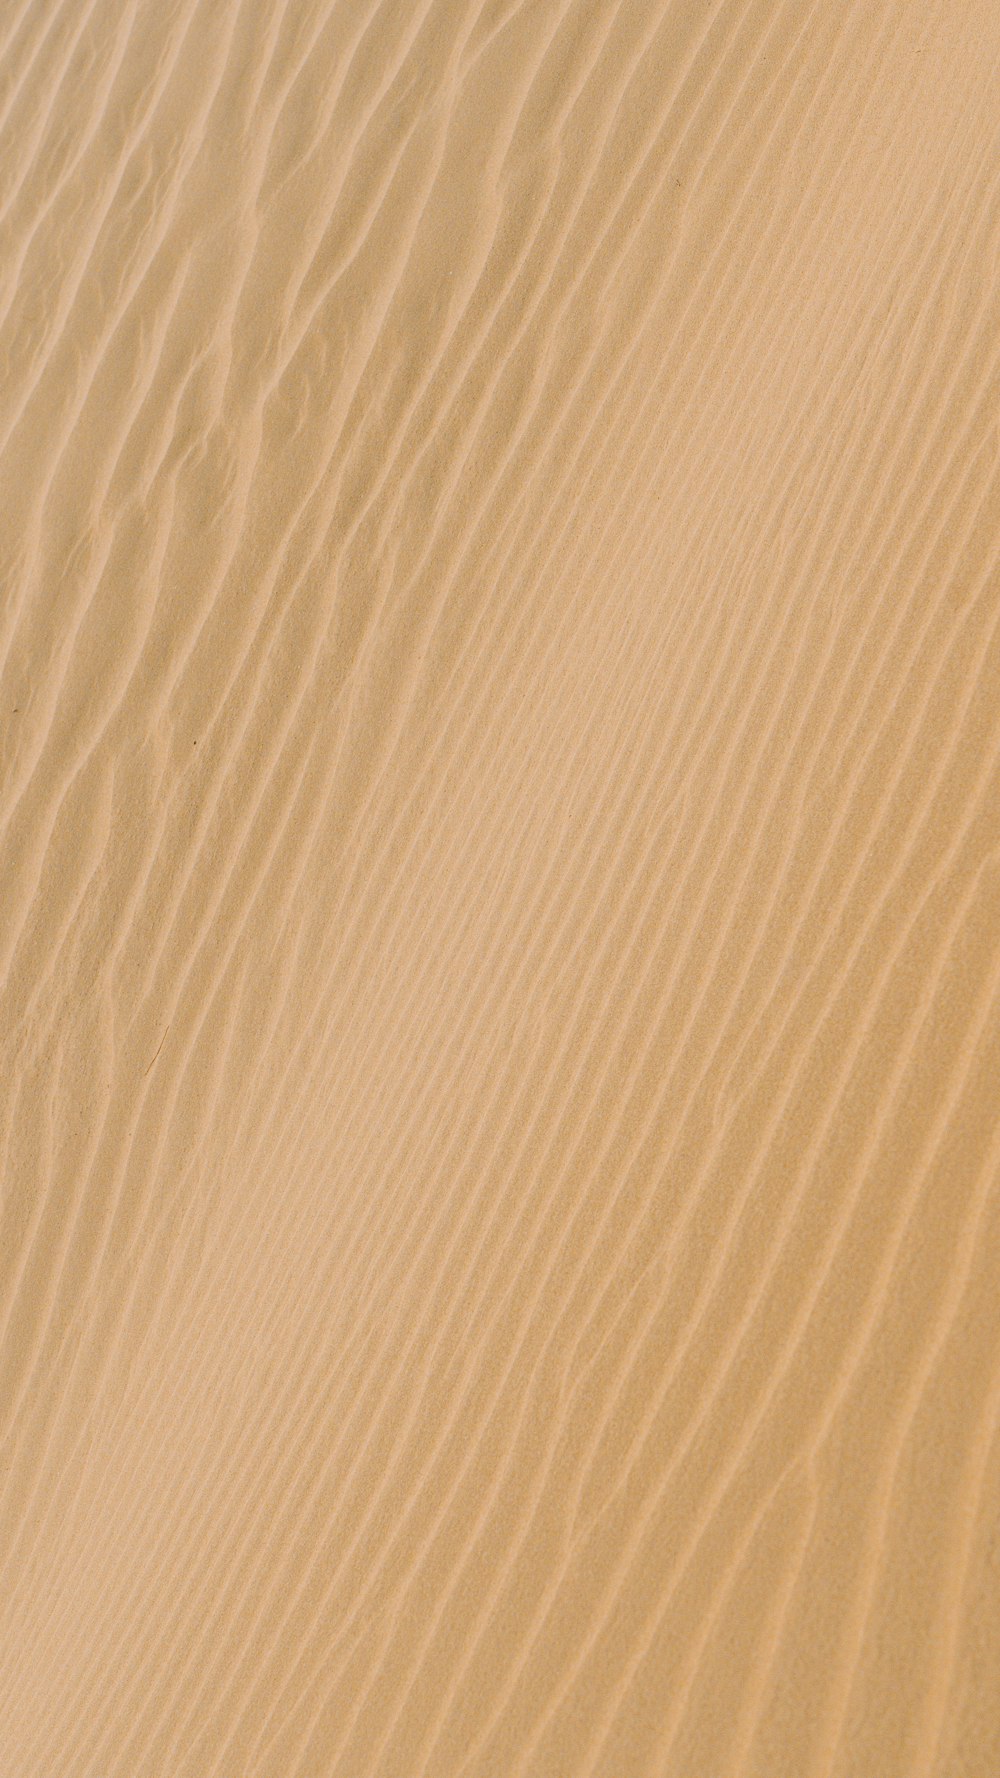 arena blanca con sombra de persona